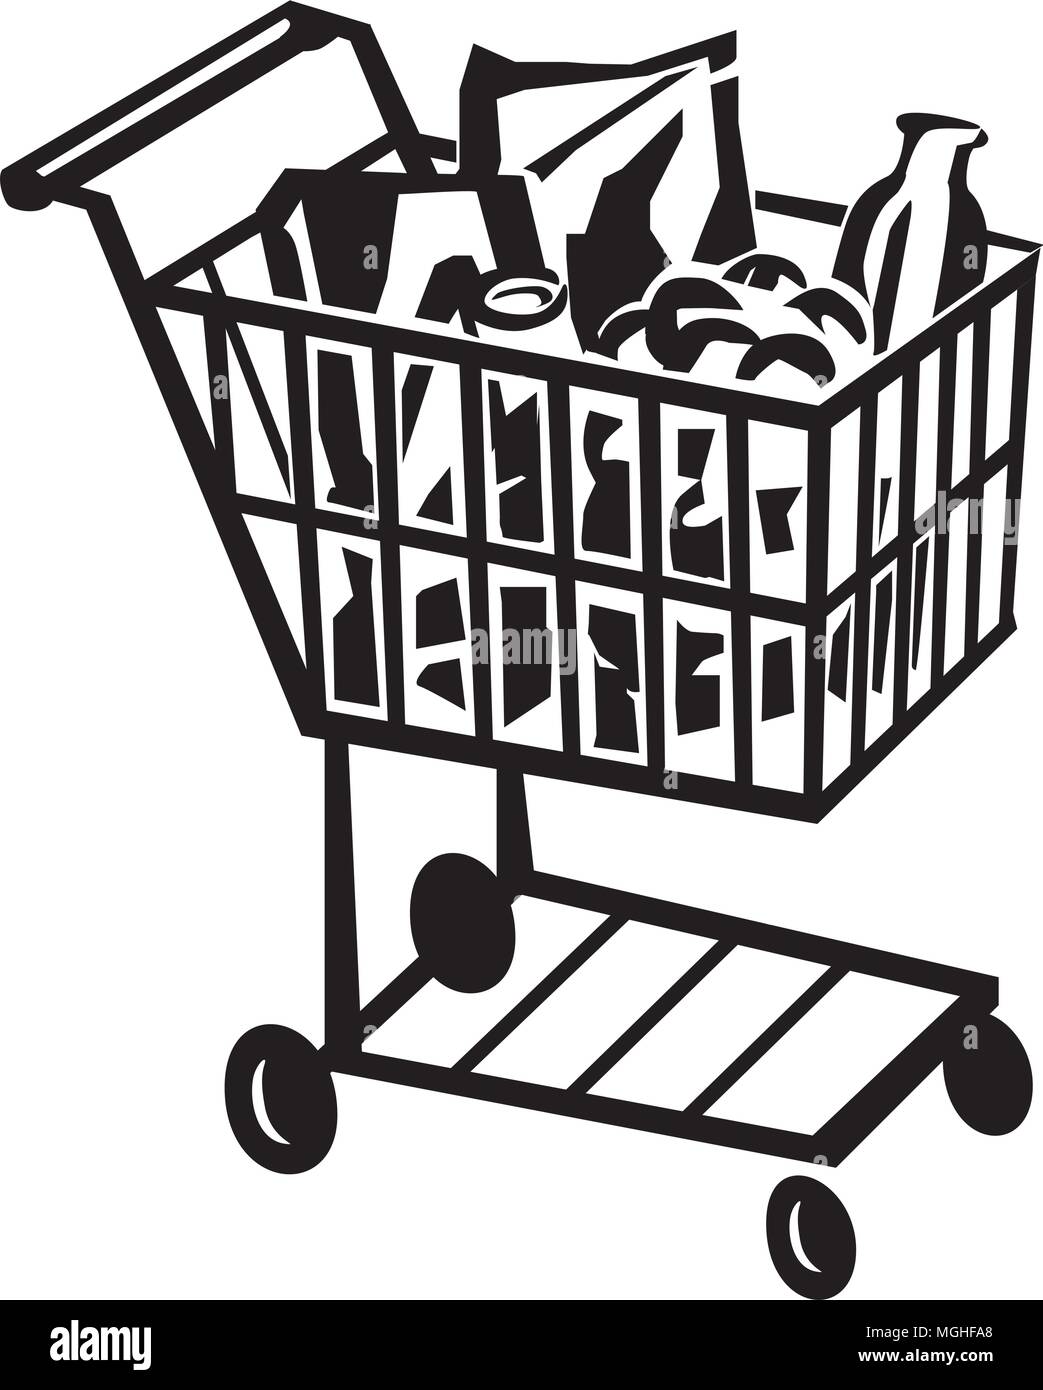 clipart shopping cart